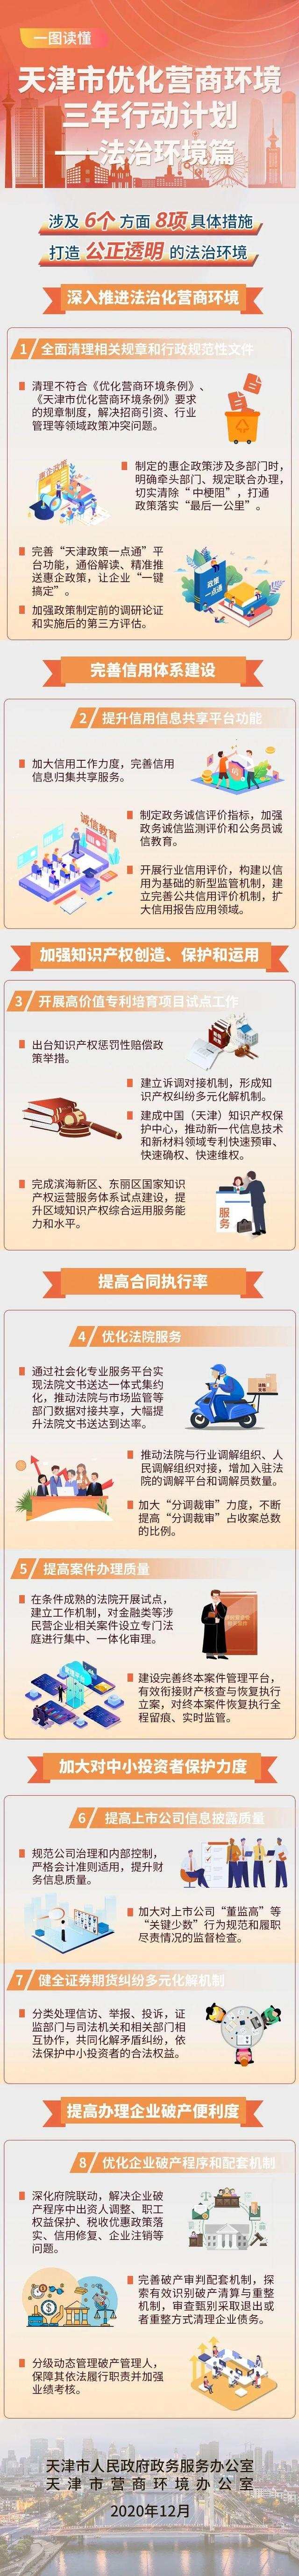 天津市优化营商环境三年行动计划——法治环境篇